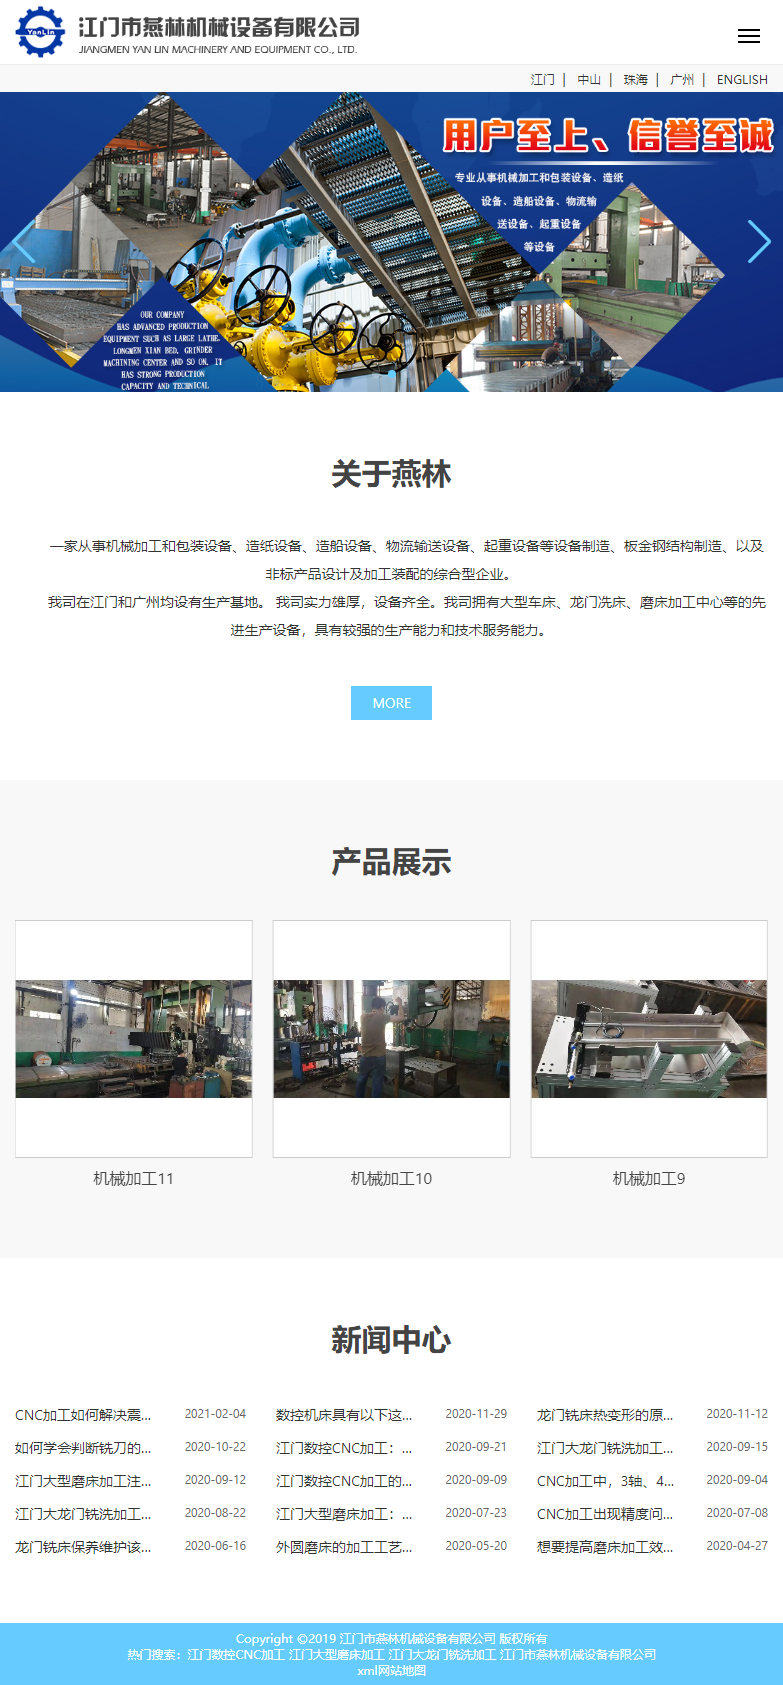 江门市燕林机械设备有限公司网站案例